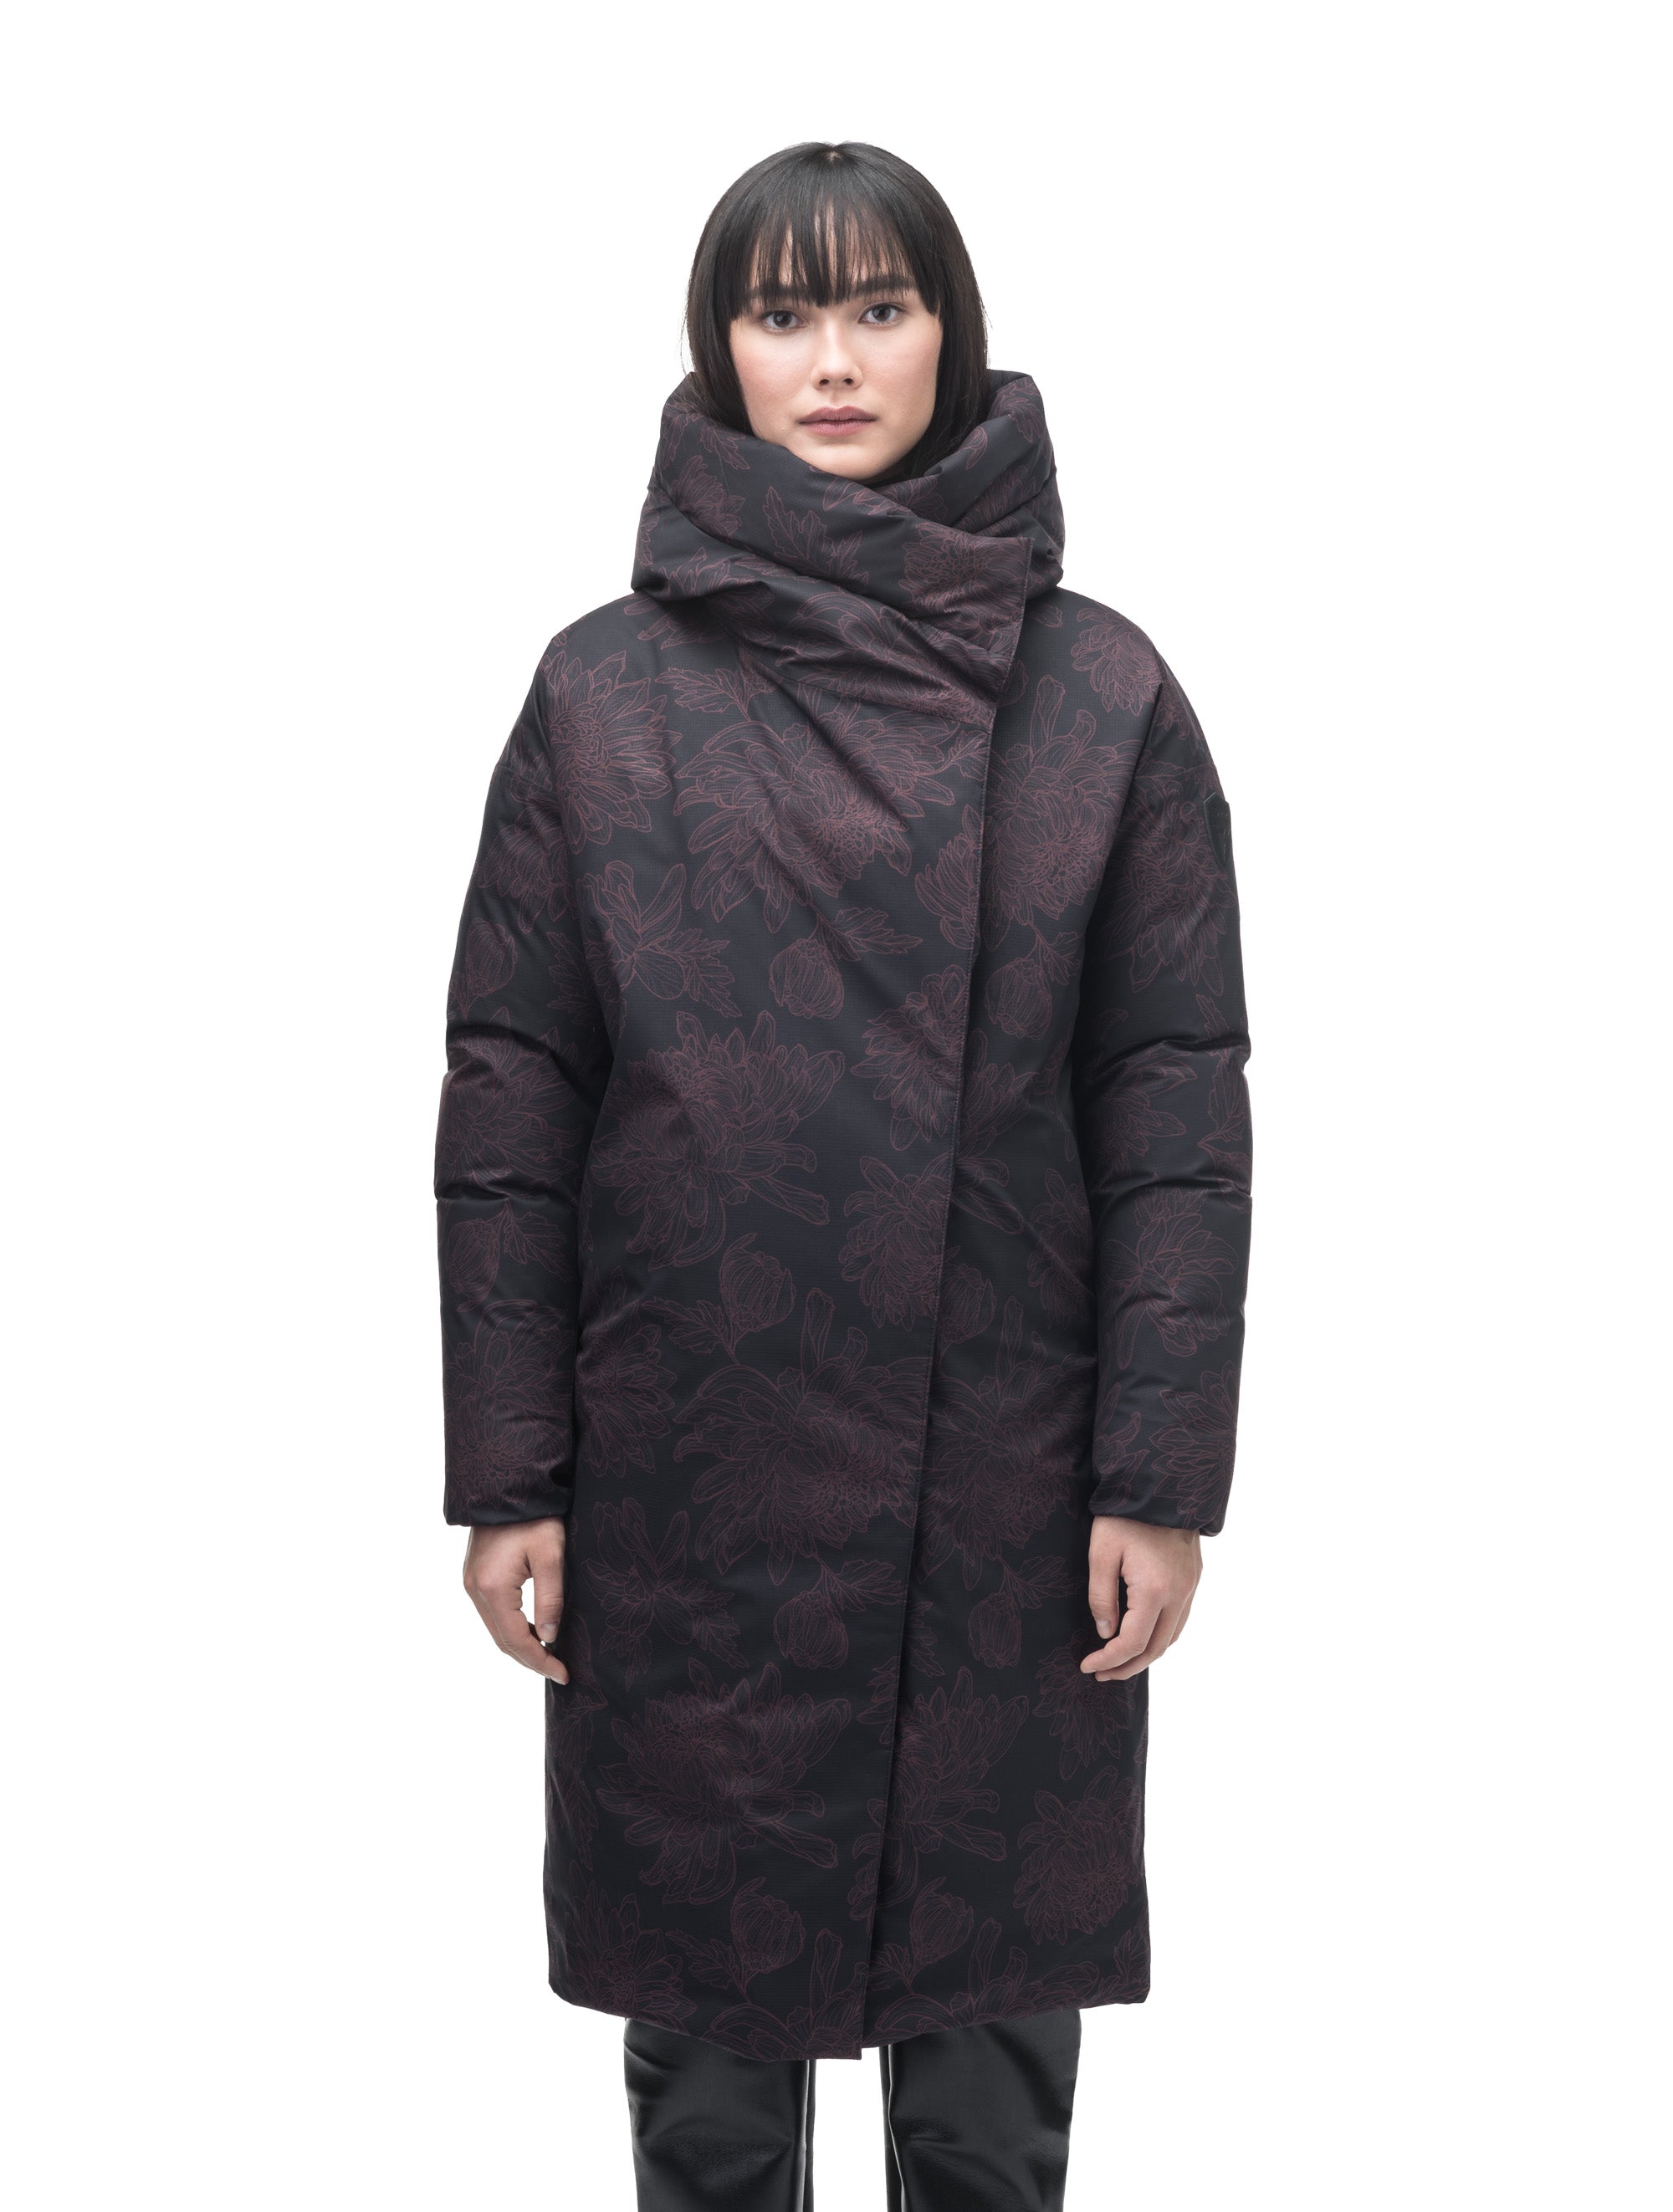 Axis Women's Oversized Coat